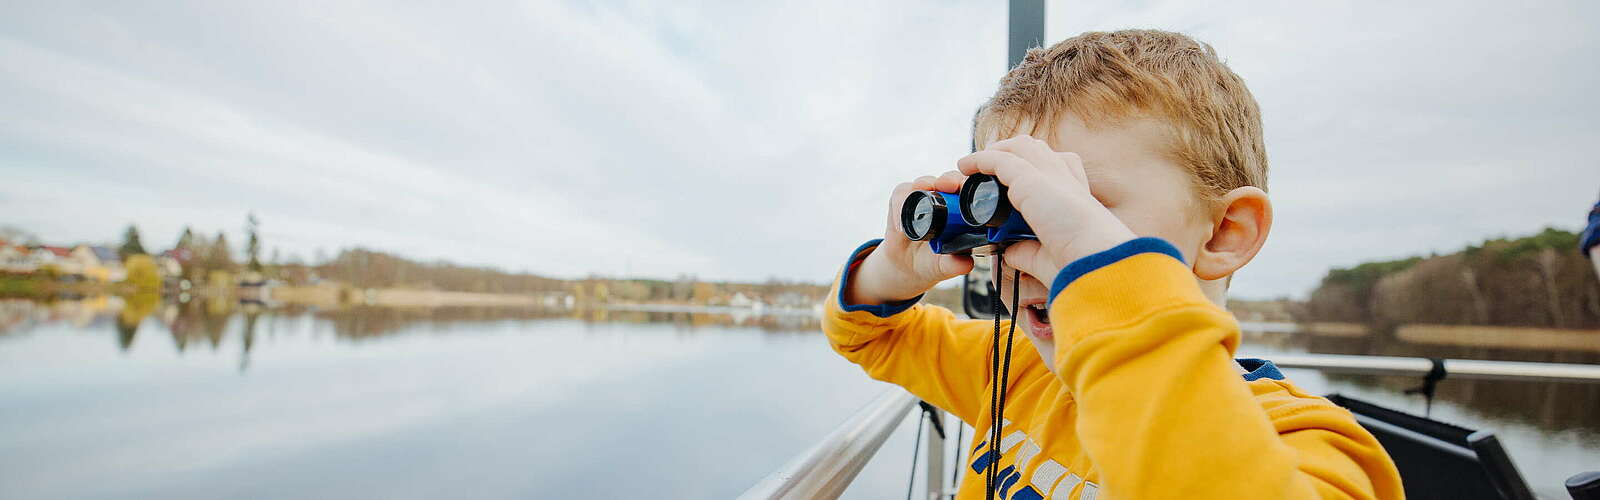 Junge mit Fernglas,
        
    

        Foto: Tourismusverband Ruppiner Seenland e.V./Julia Nimke